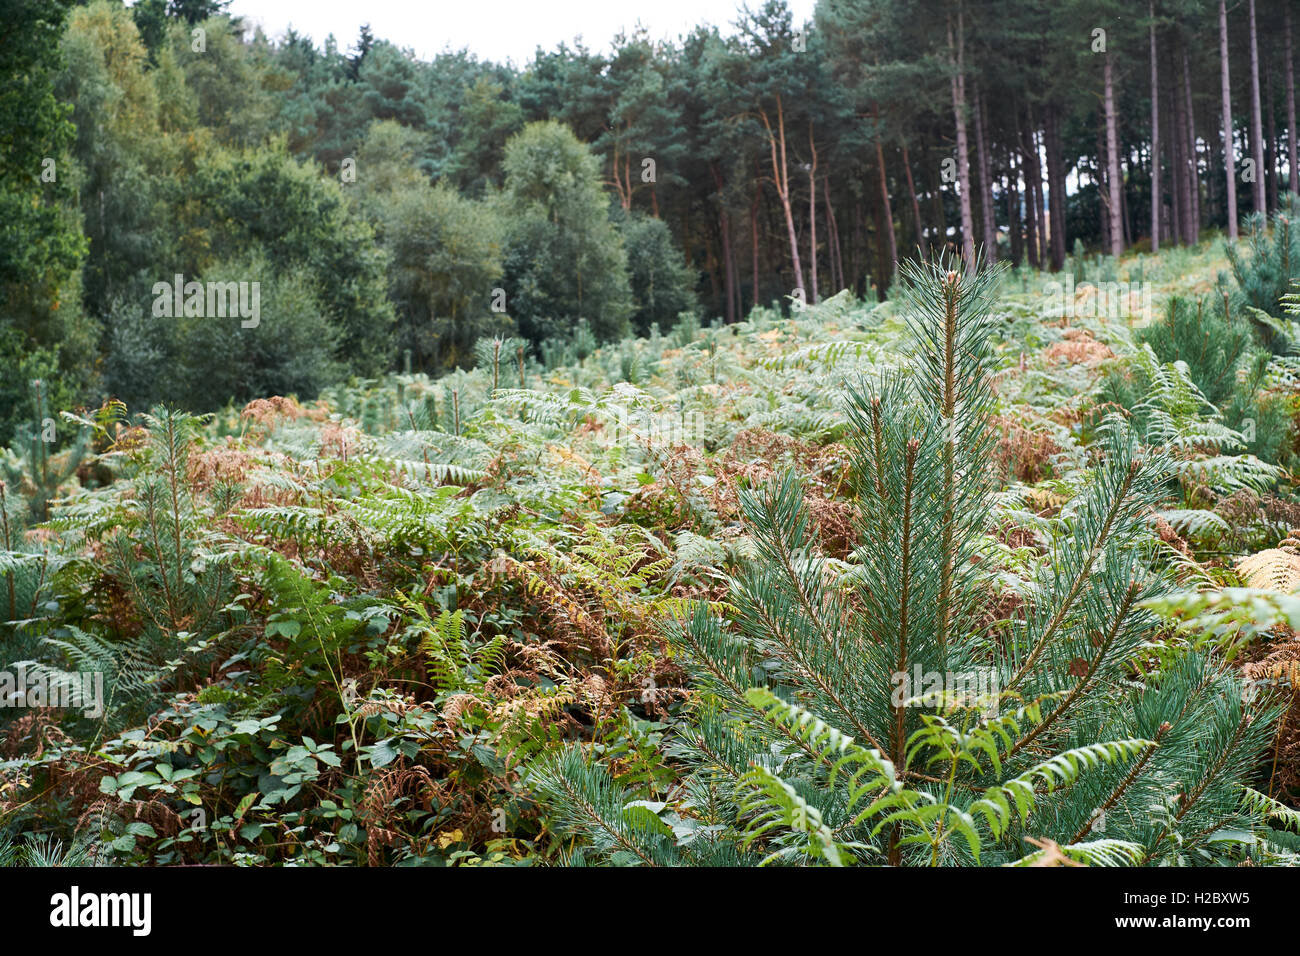 Le pin sylvestre (Pinus sylvestris) croissant dans une plantation forestière, au Royaume-Uni. Banque D'Images